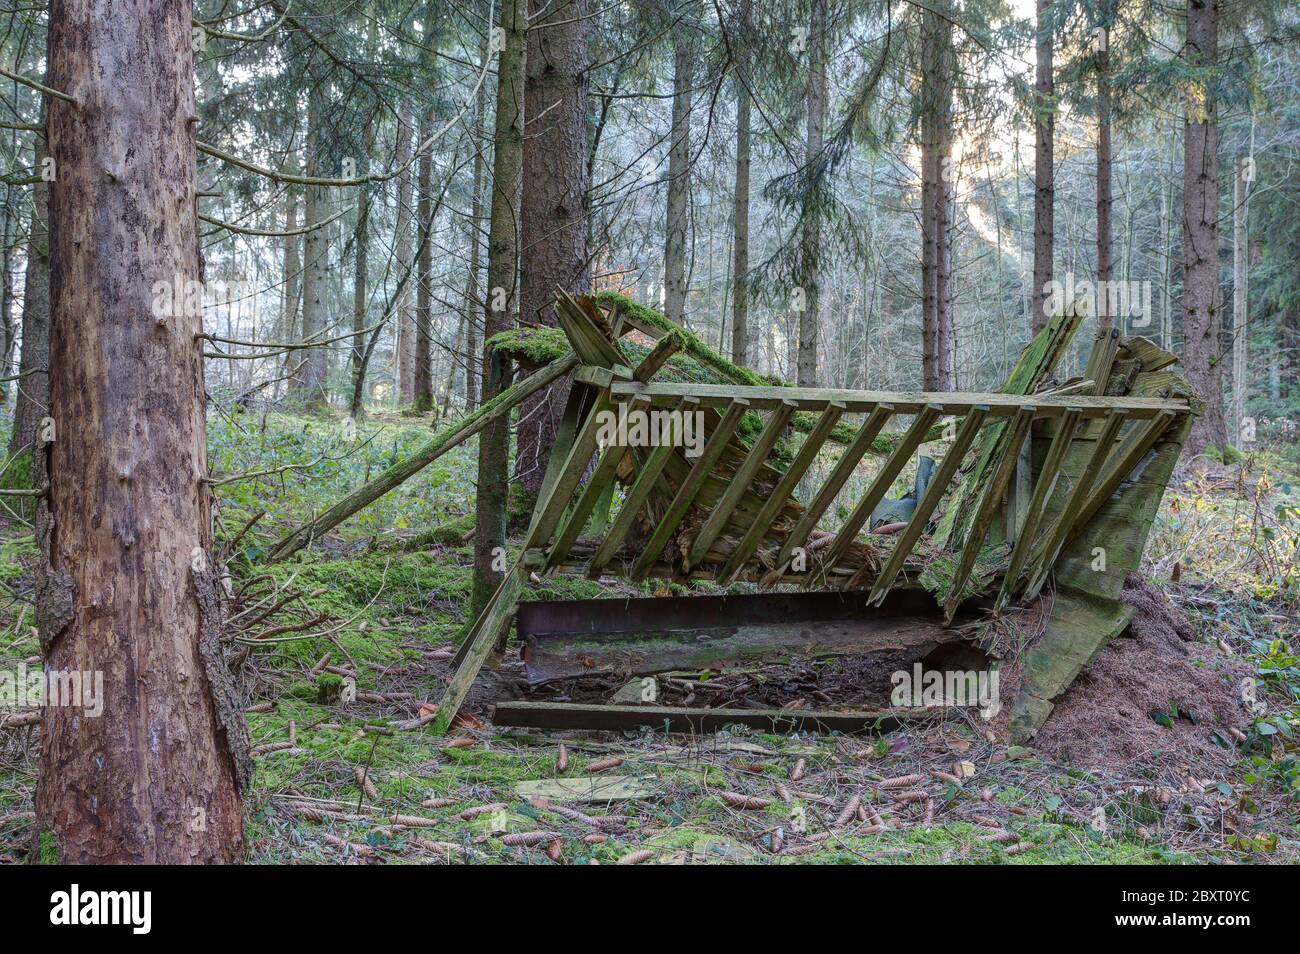 Berceau de nourriture, relique d'une époque révolue où il y avait encore de la place pour des cerfs dans les forêts allemandes. Banque D'Images